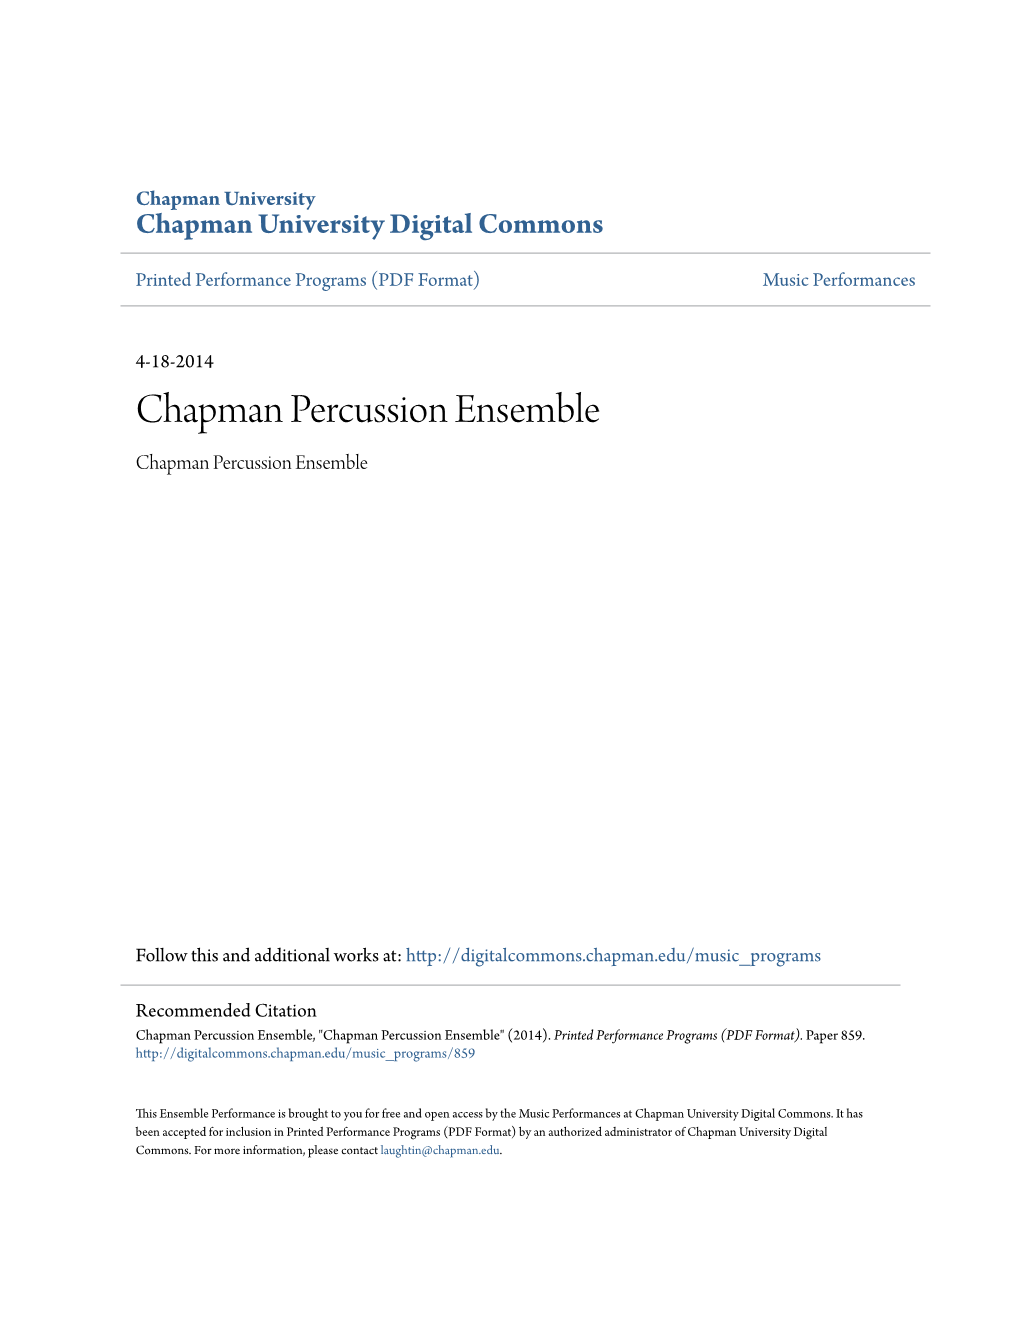 Chapman Percussion Ensemble Chapman Percussion Ensemble